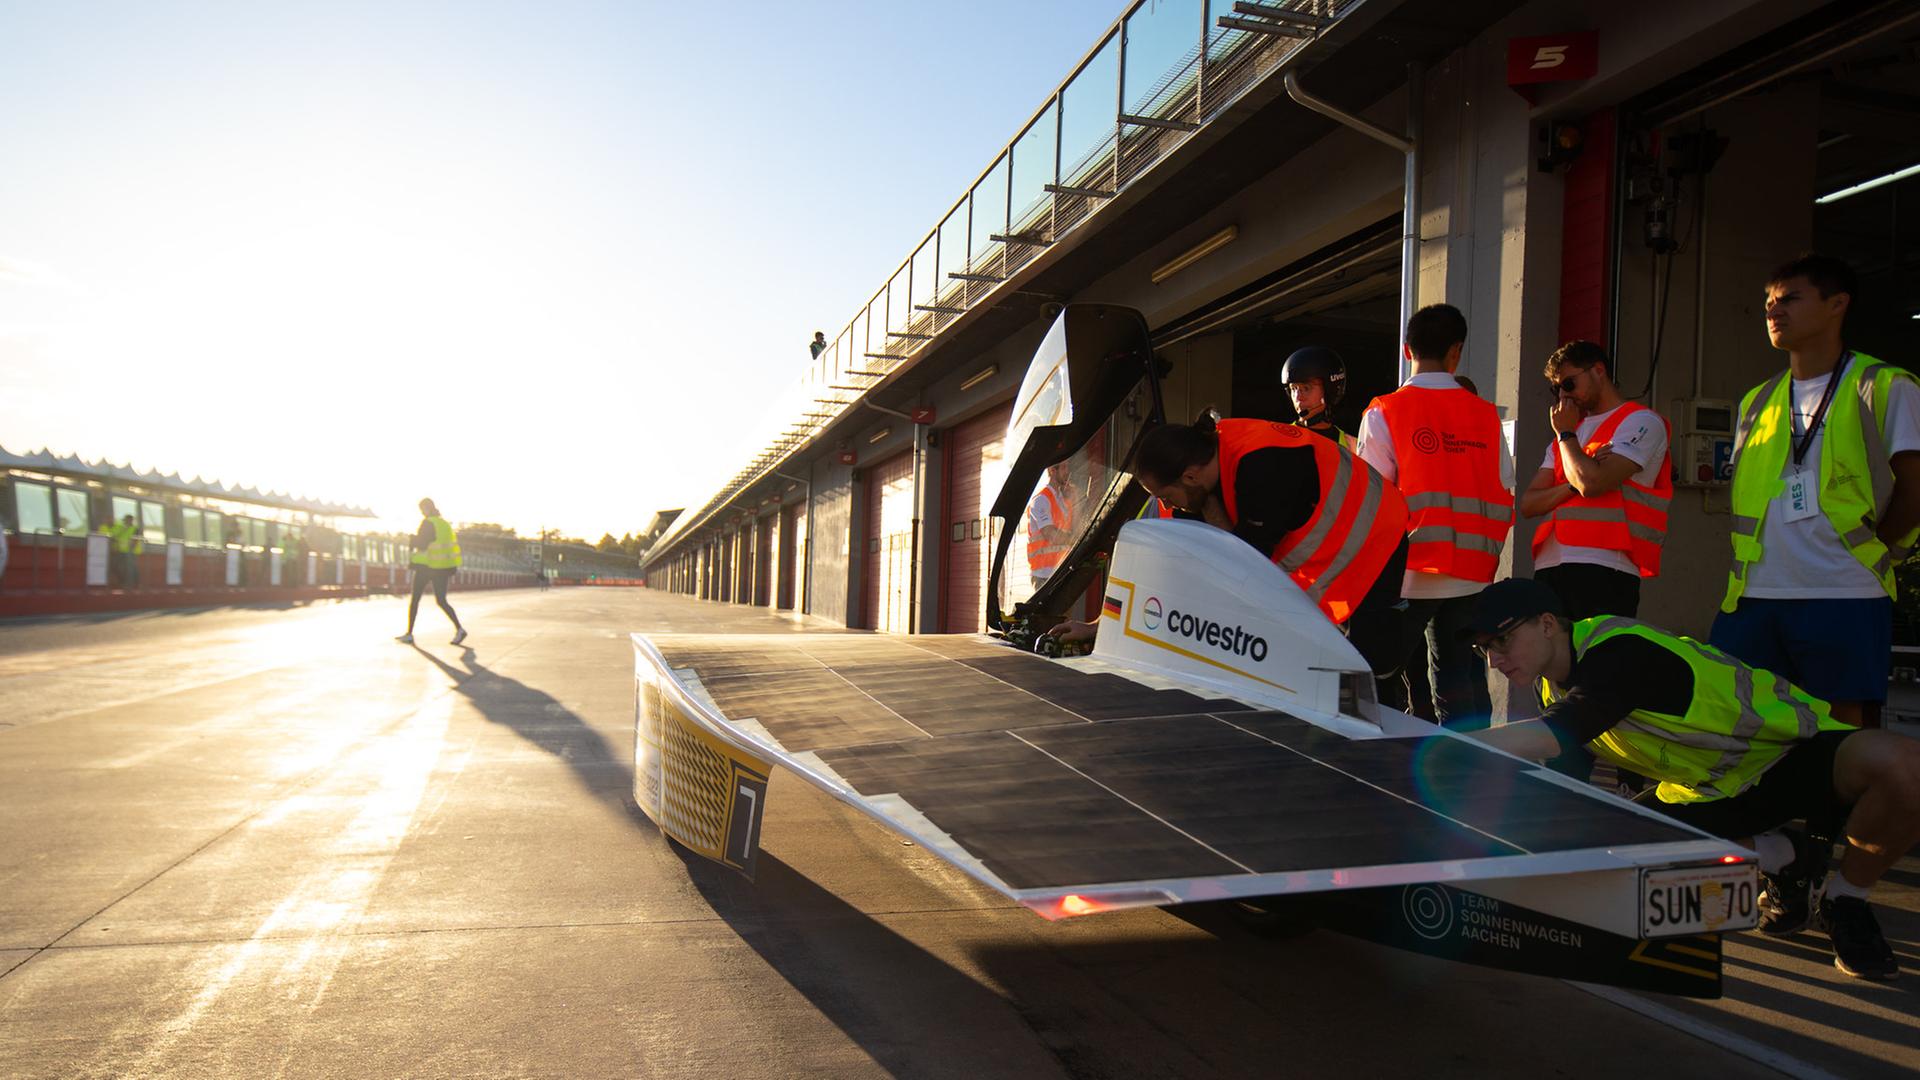 Das Vorläufer-Sonnenmobil des Aachener Teams Sonnenwagen bei einem Rennen. Zu sehen ist das windschnittige Mobil auf einer Rennstrecke, im Hintergrund die Sonne im Dämmerlicht. 